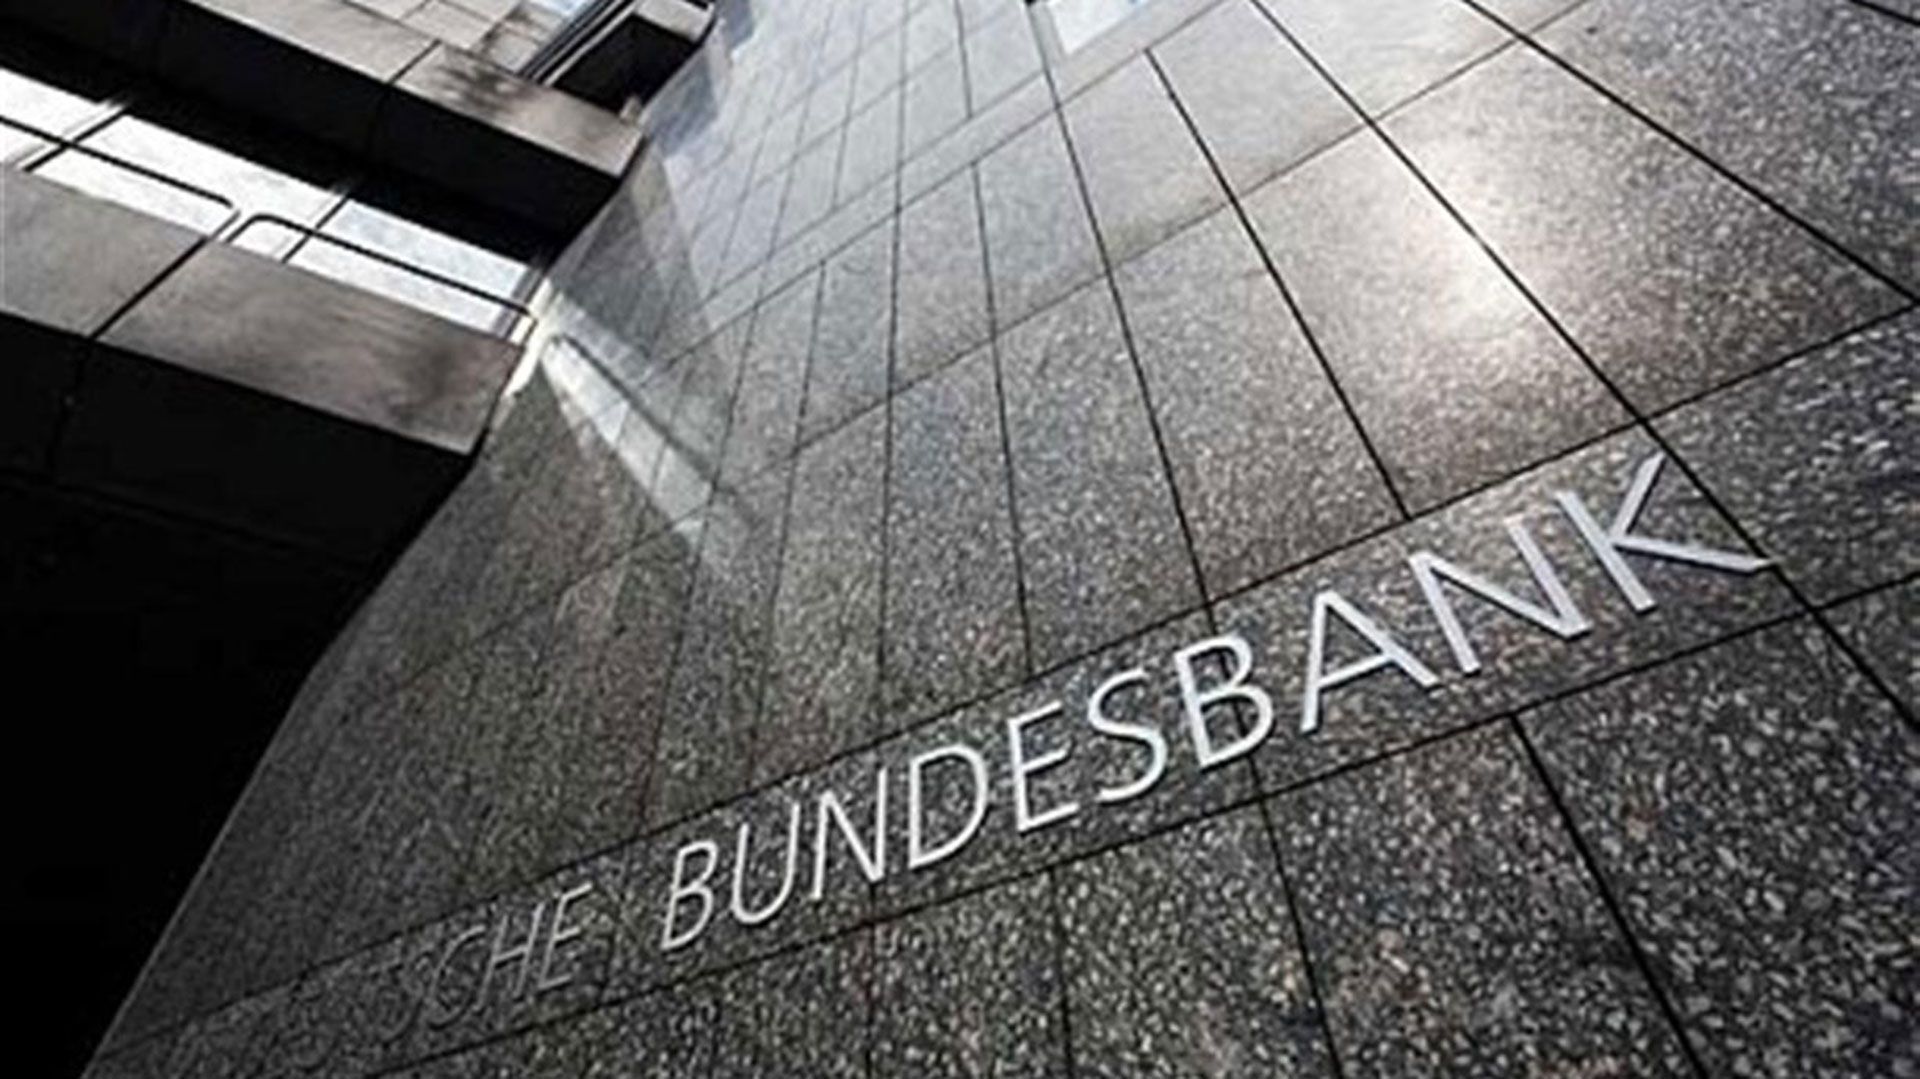 El Bundesbank, banco central alemán, núcleo del Banco Central Europeo, por su reputación de solidez y dureza monetaria. (Reuters)